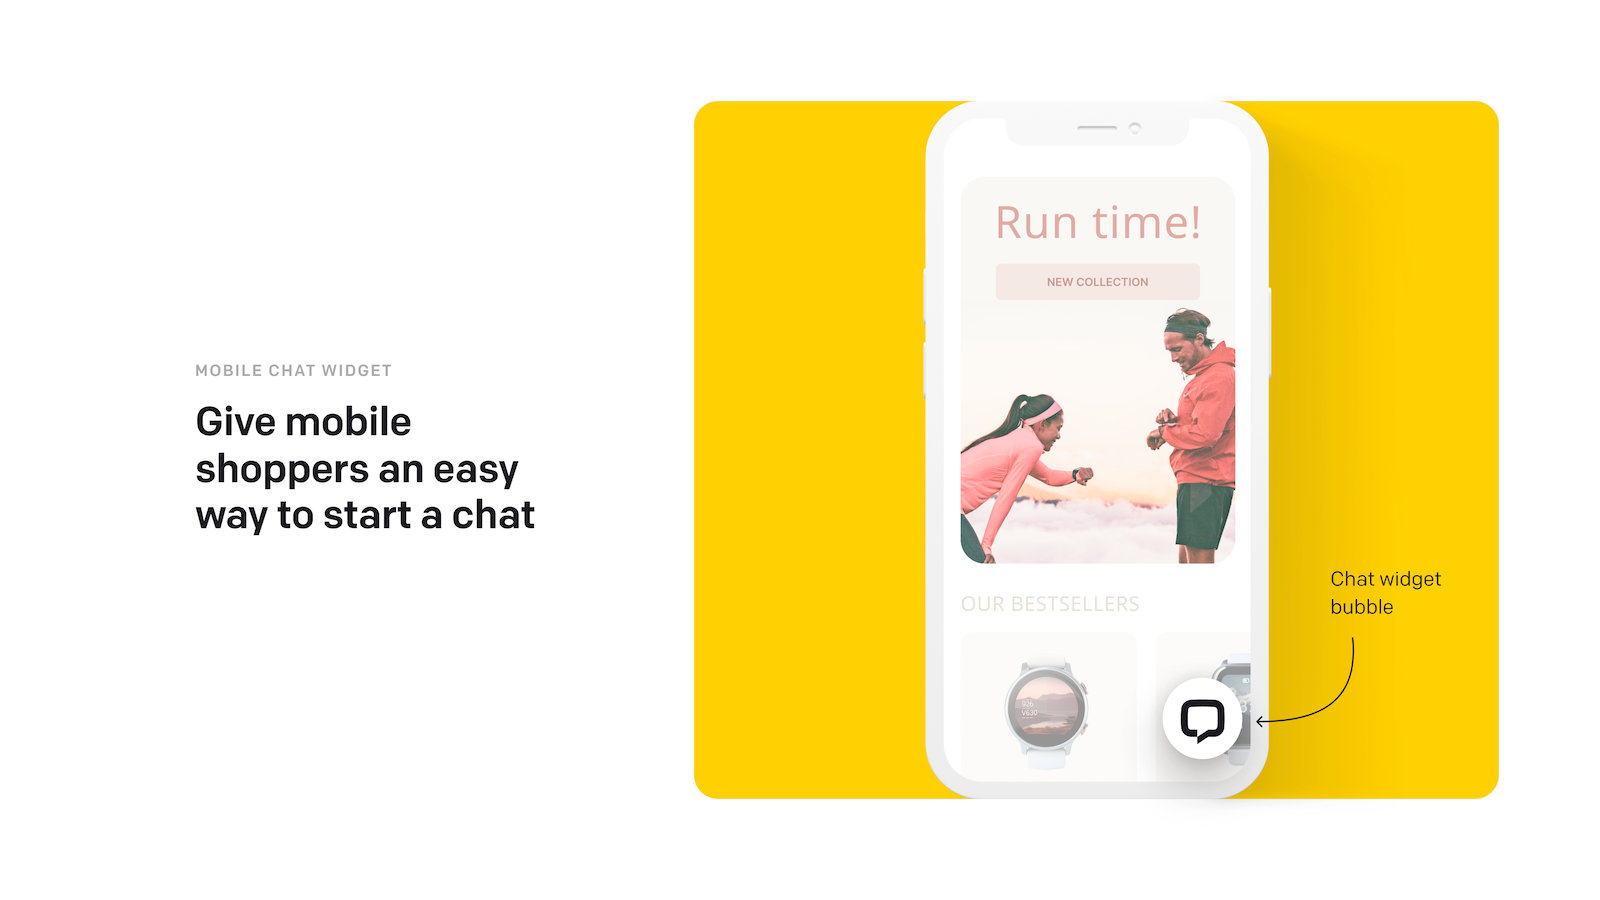 Een chat widget bubbel die mobiele shoppers kunnen gebruiken om een chat te starten.